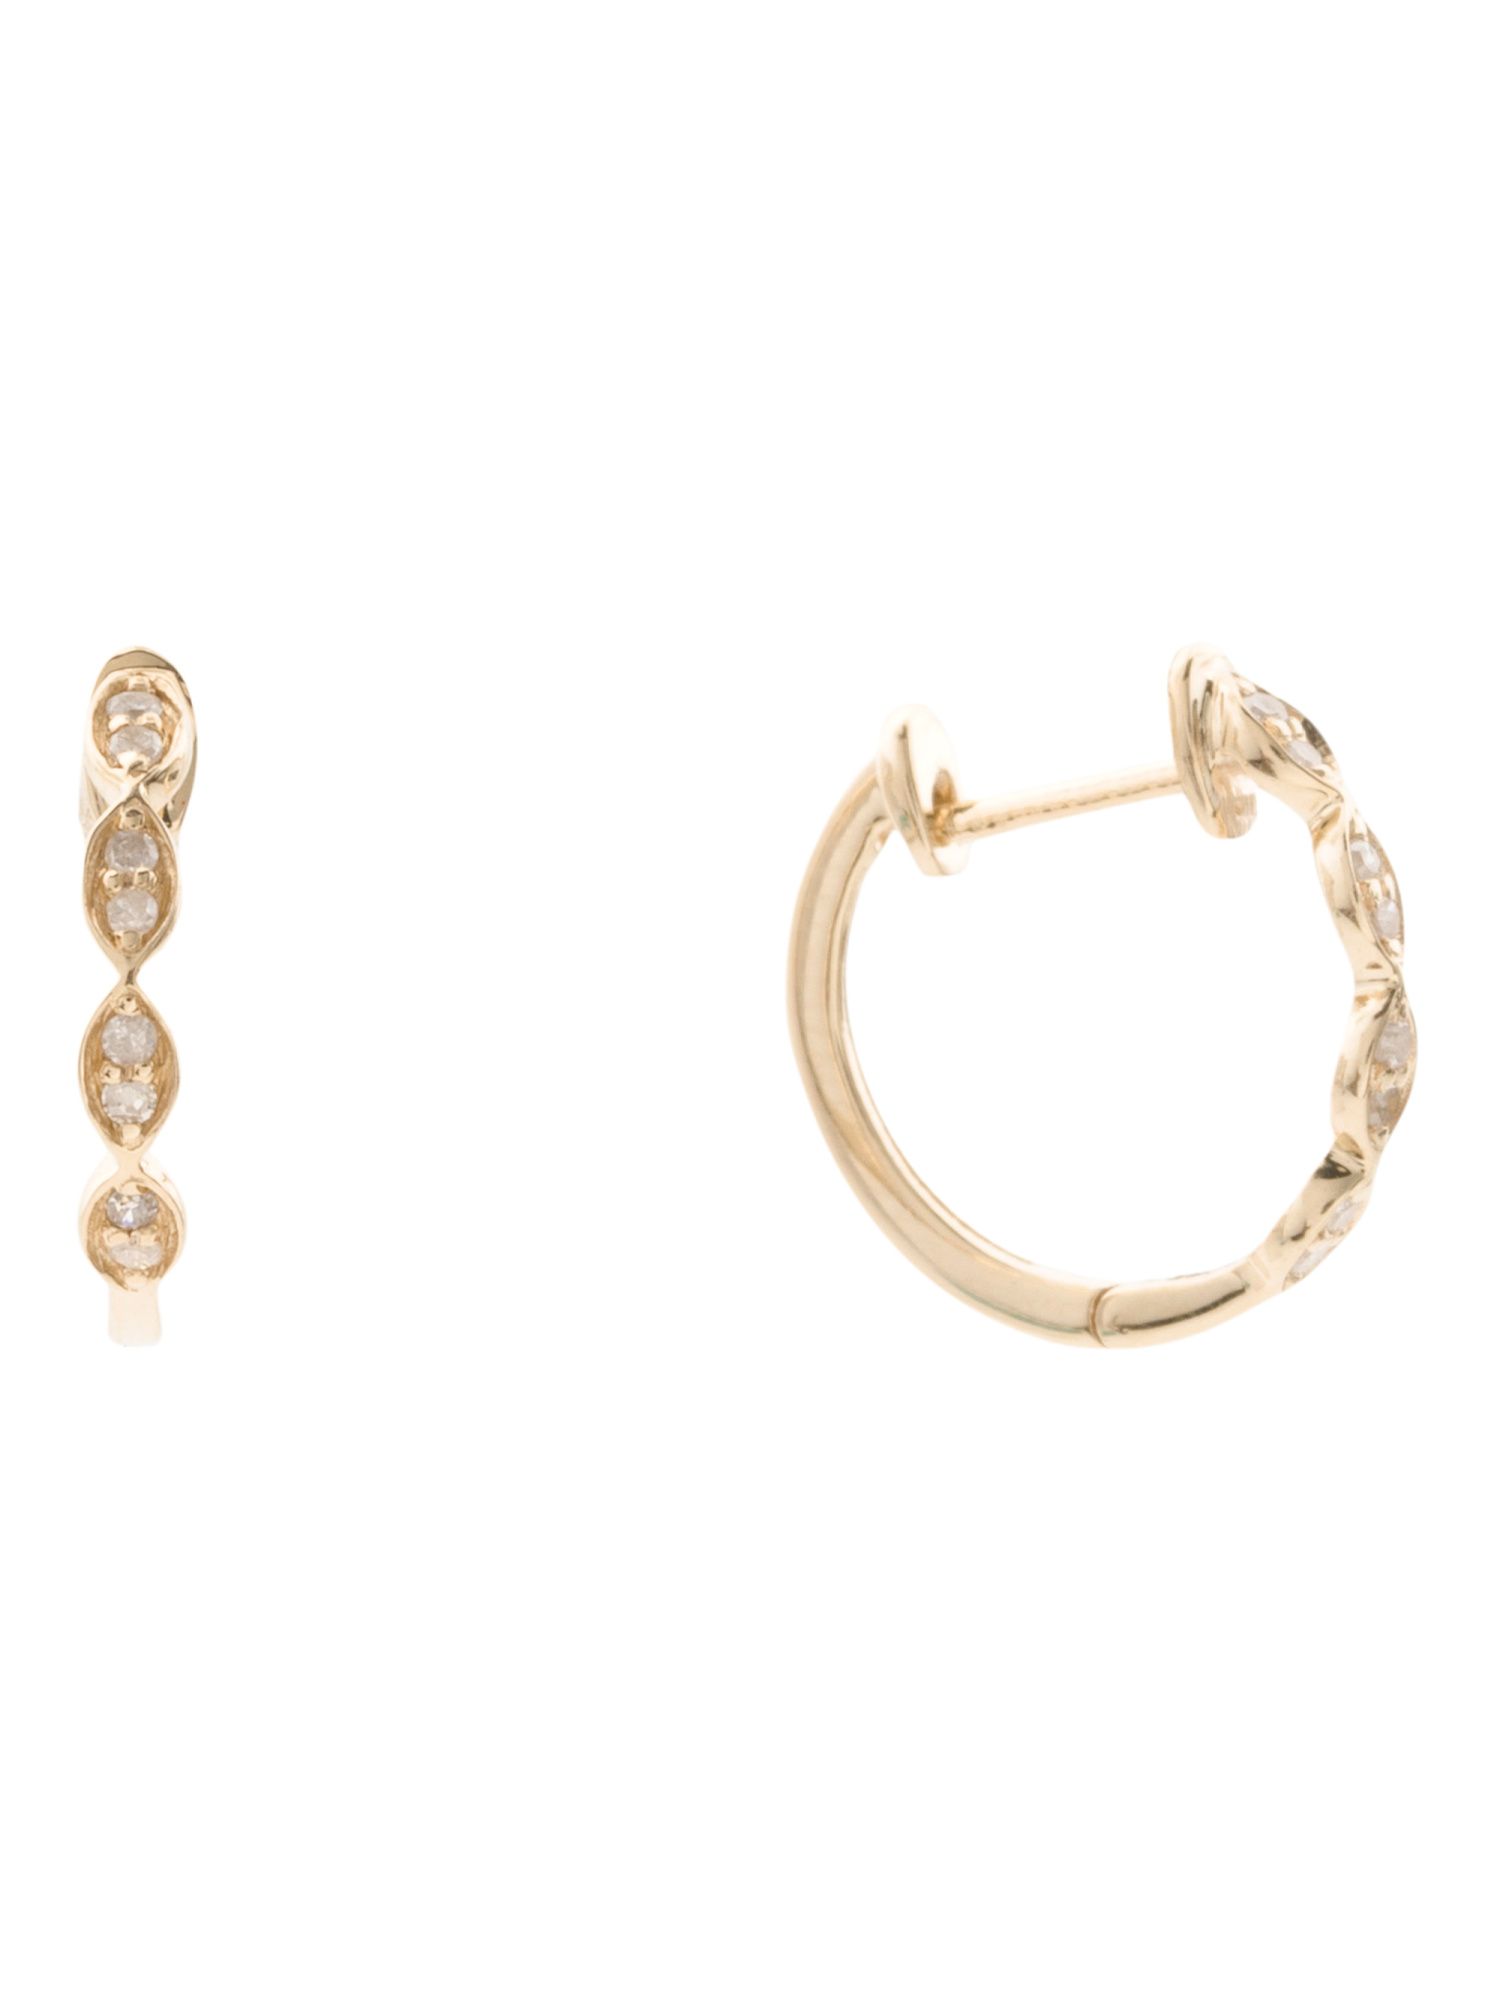 Made In India 14kt Gold Diamond Fancy Huggie Earrings | TJ Maxx